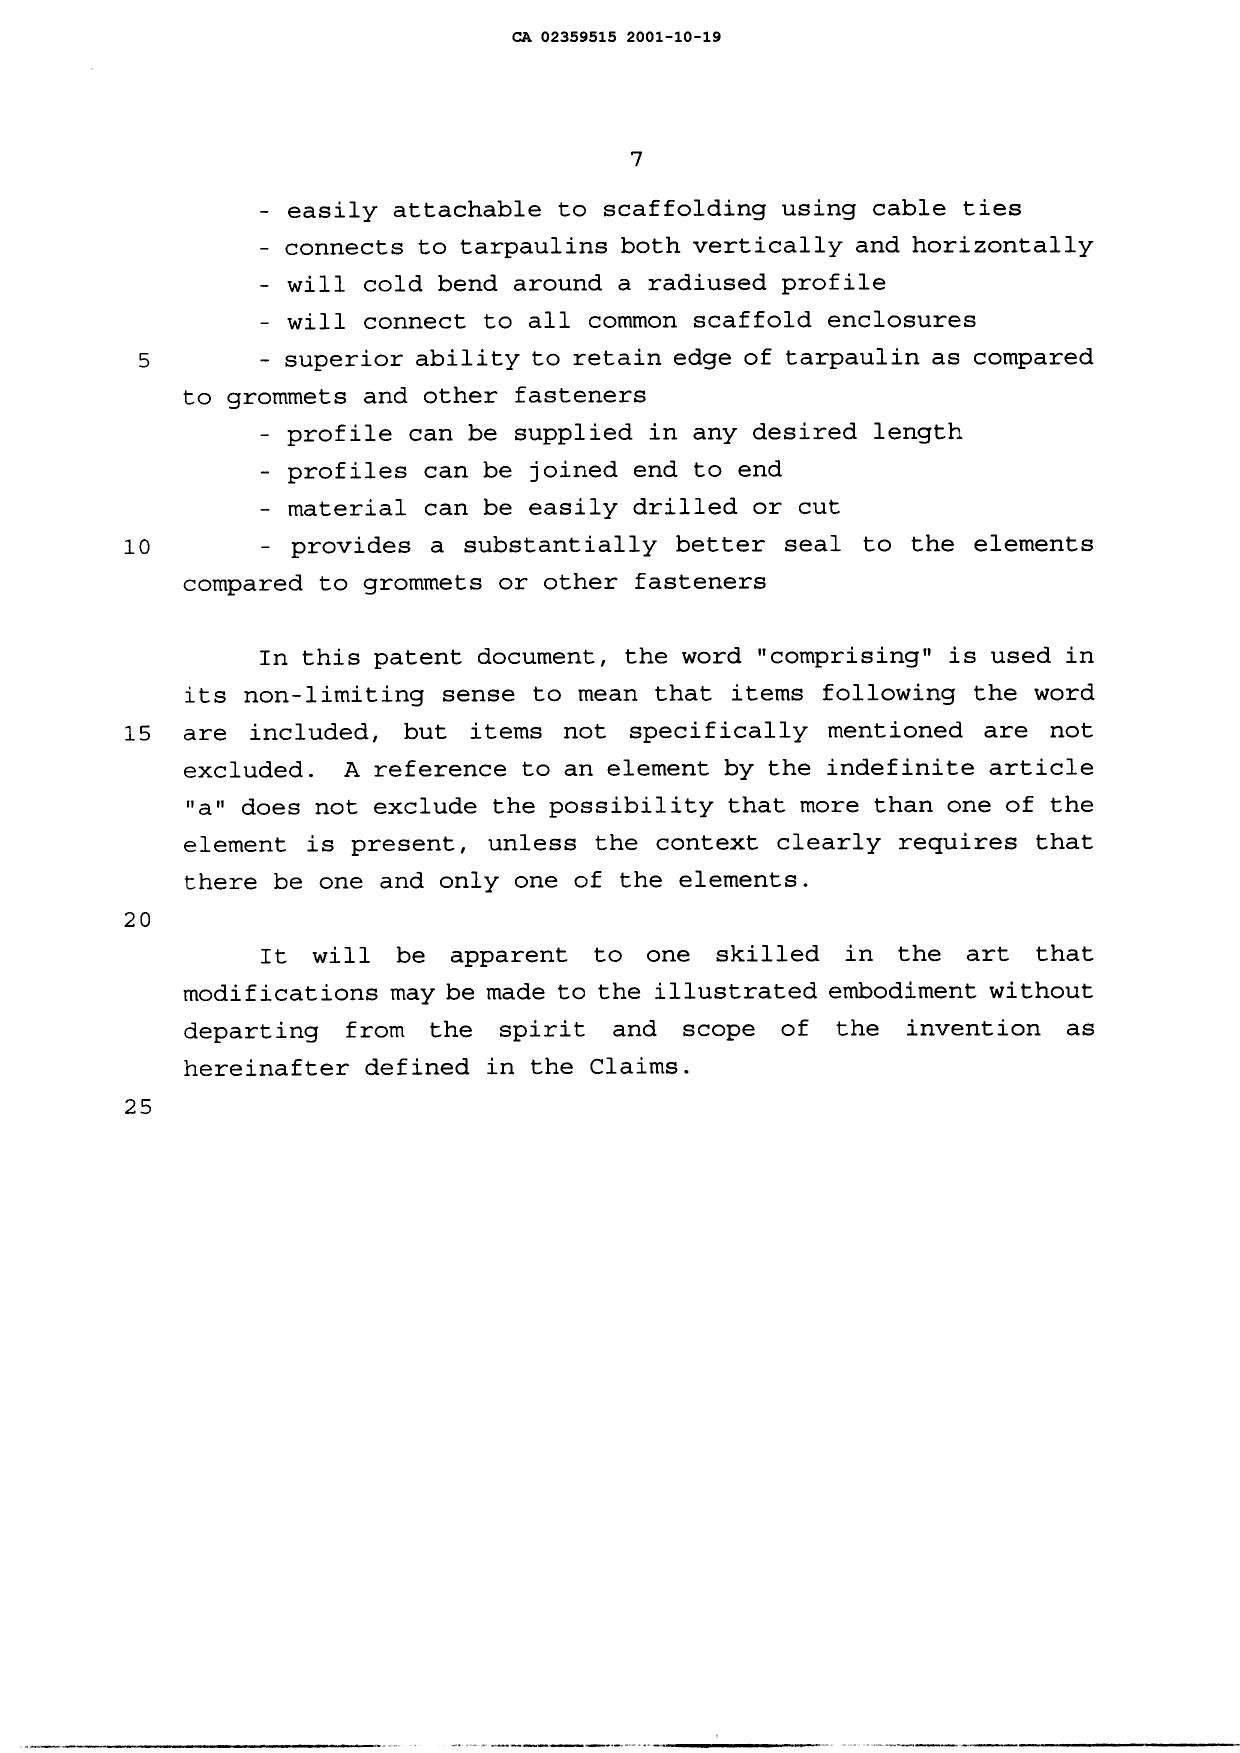 Canadian Patent Document 2359515. Description 20011019. Image 7 of 7